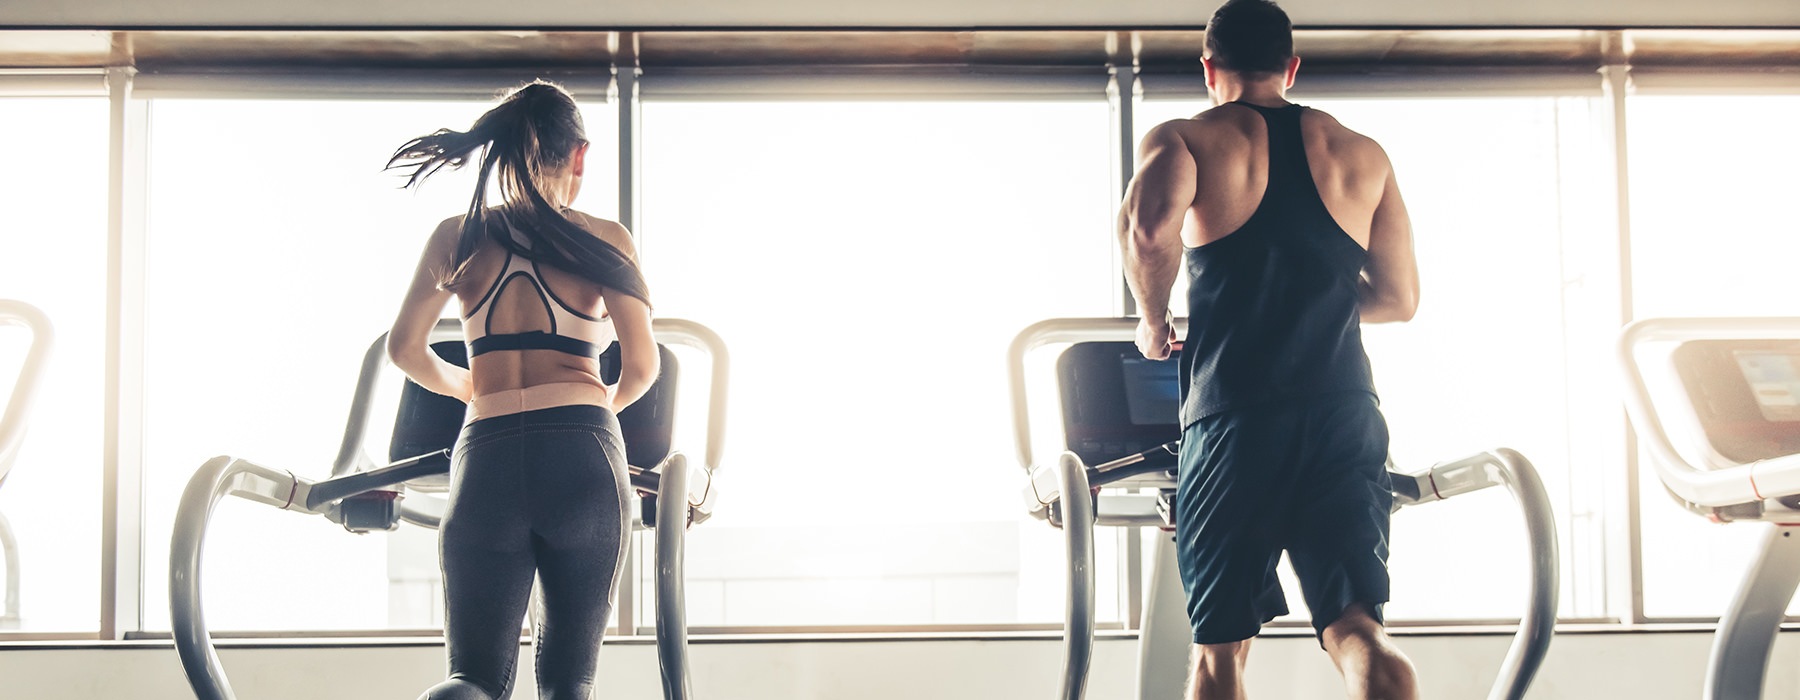 couple running on treadmills in fitness center